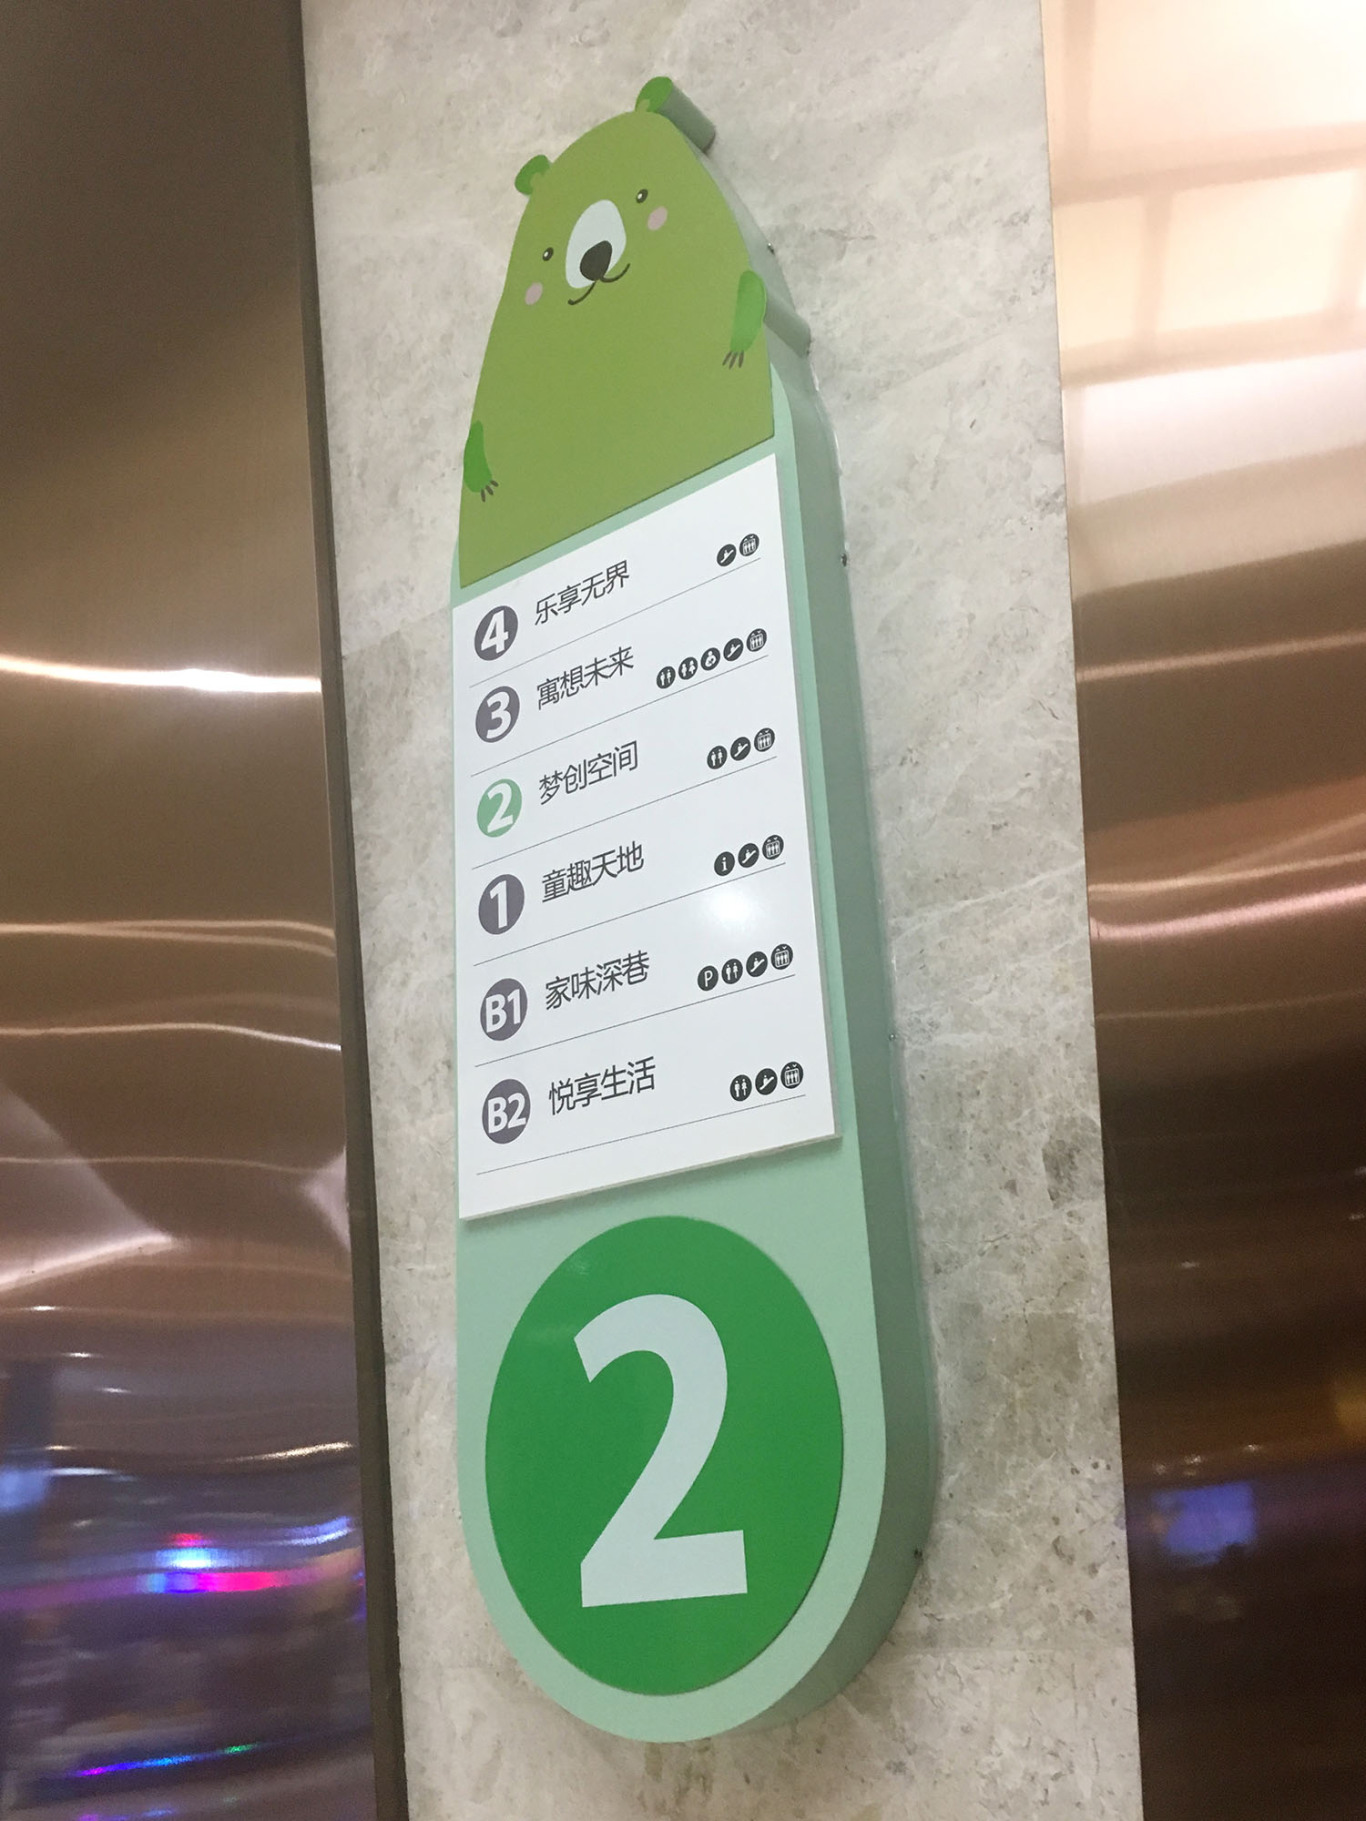 广州缤纷天地购物中心导示系统设计图5